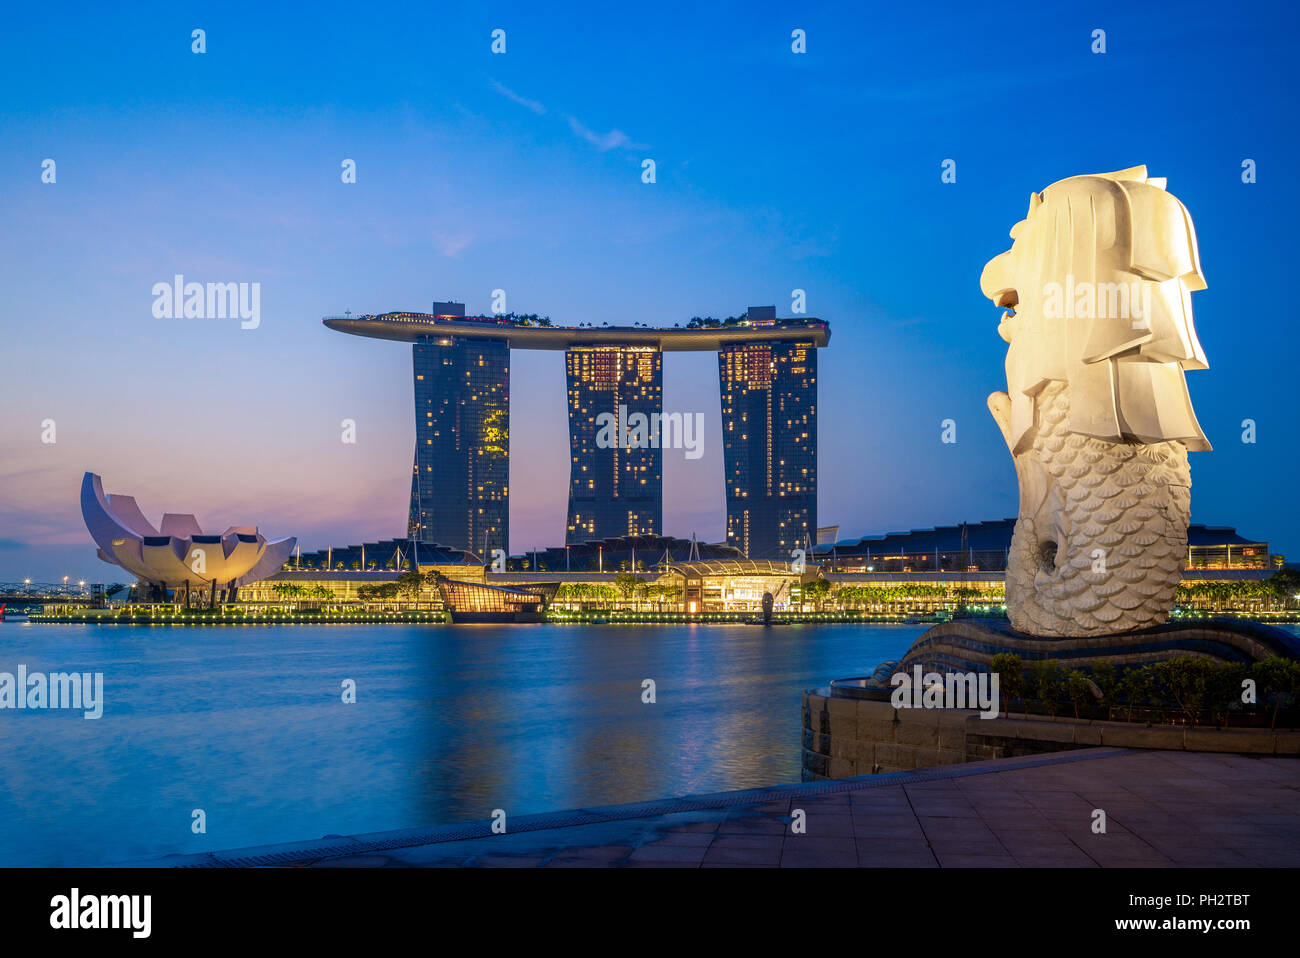 Singapour, Singapour - le 12 août 2018 : skyline de Singapour avec merlion et sands at night Banque D'Images